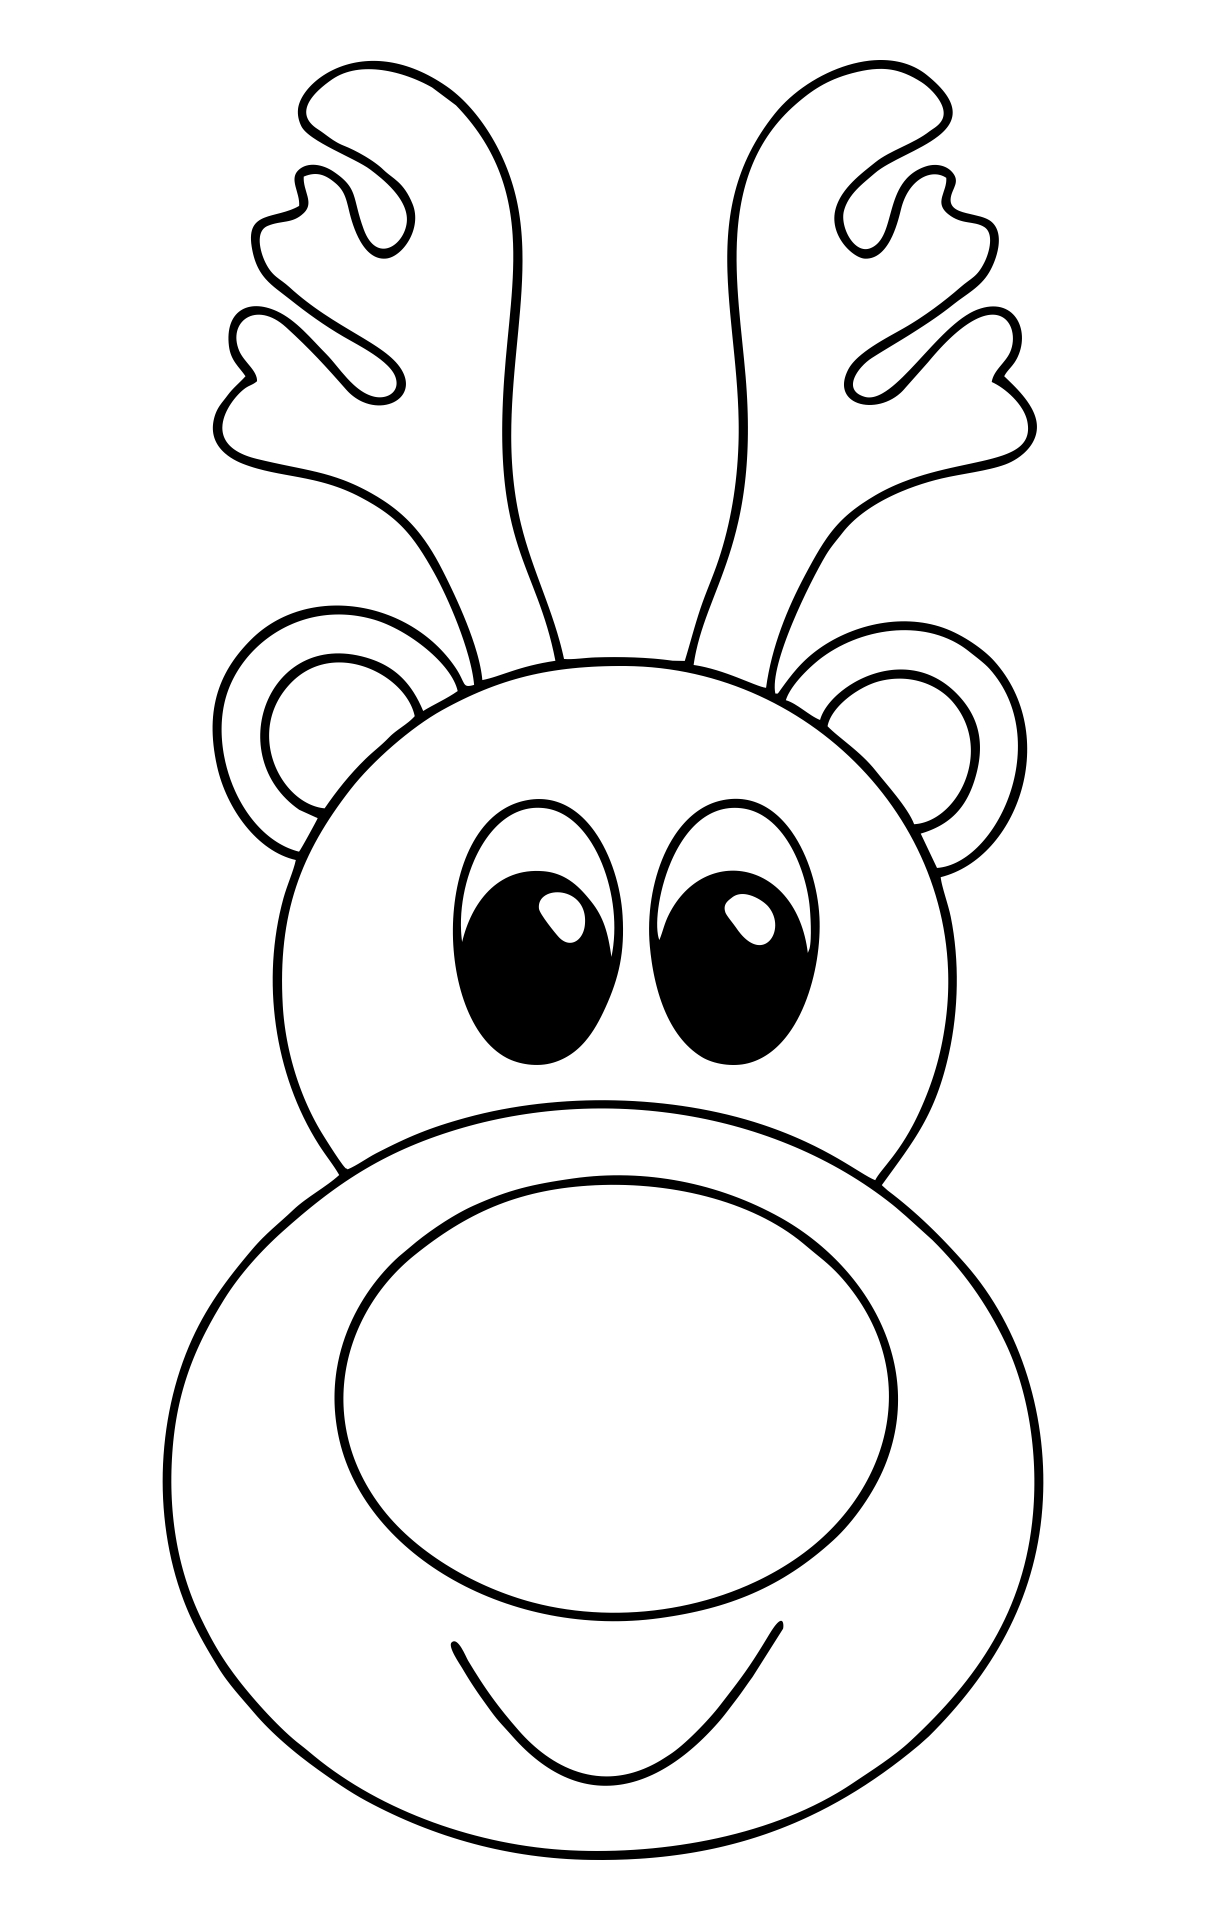 Free Printable Reindeer Christmas Tags Templates